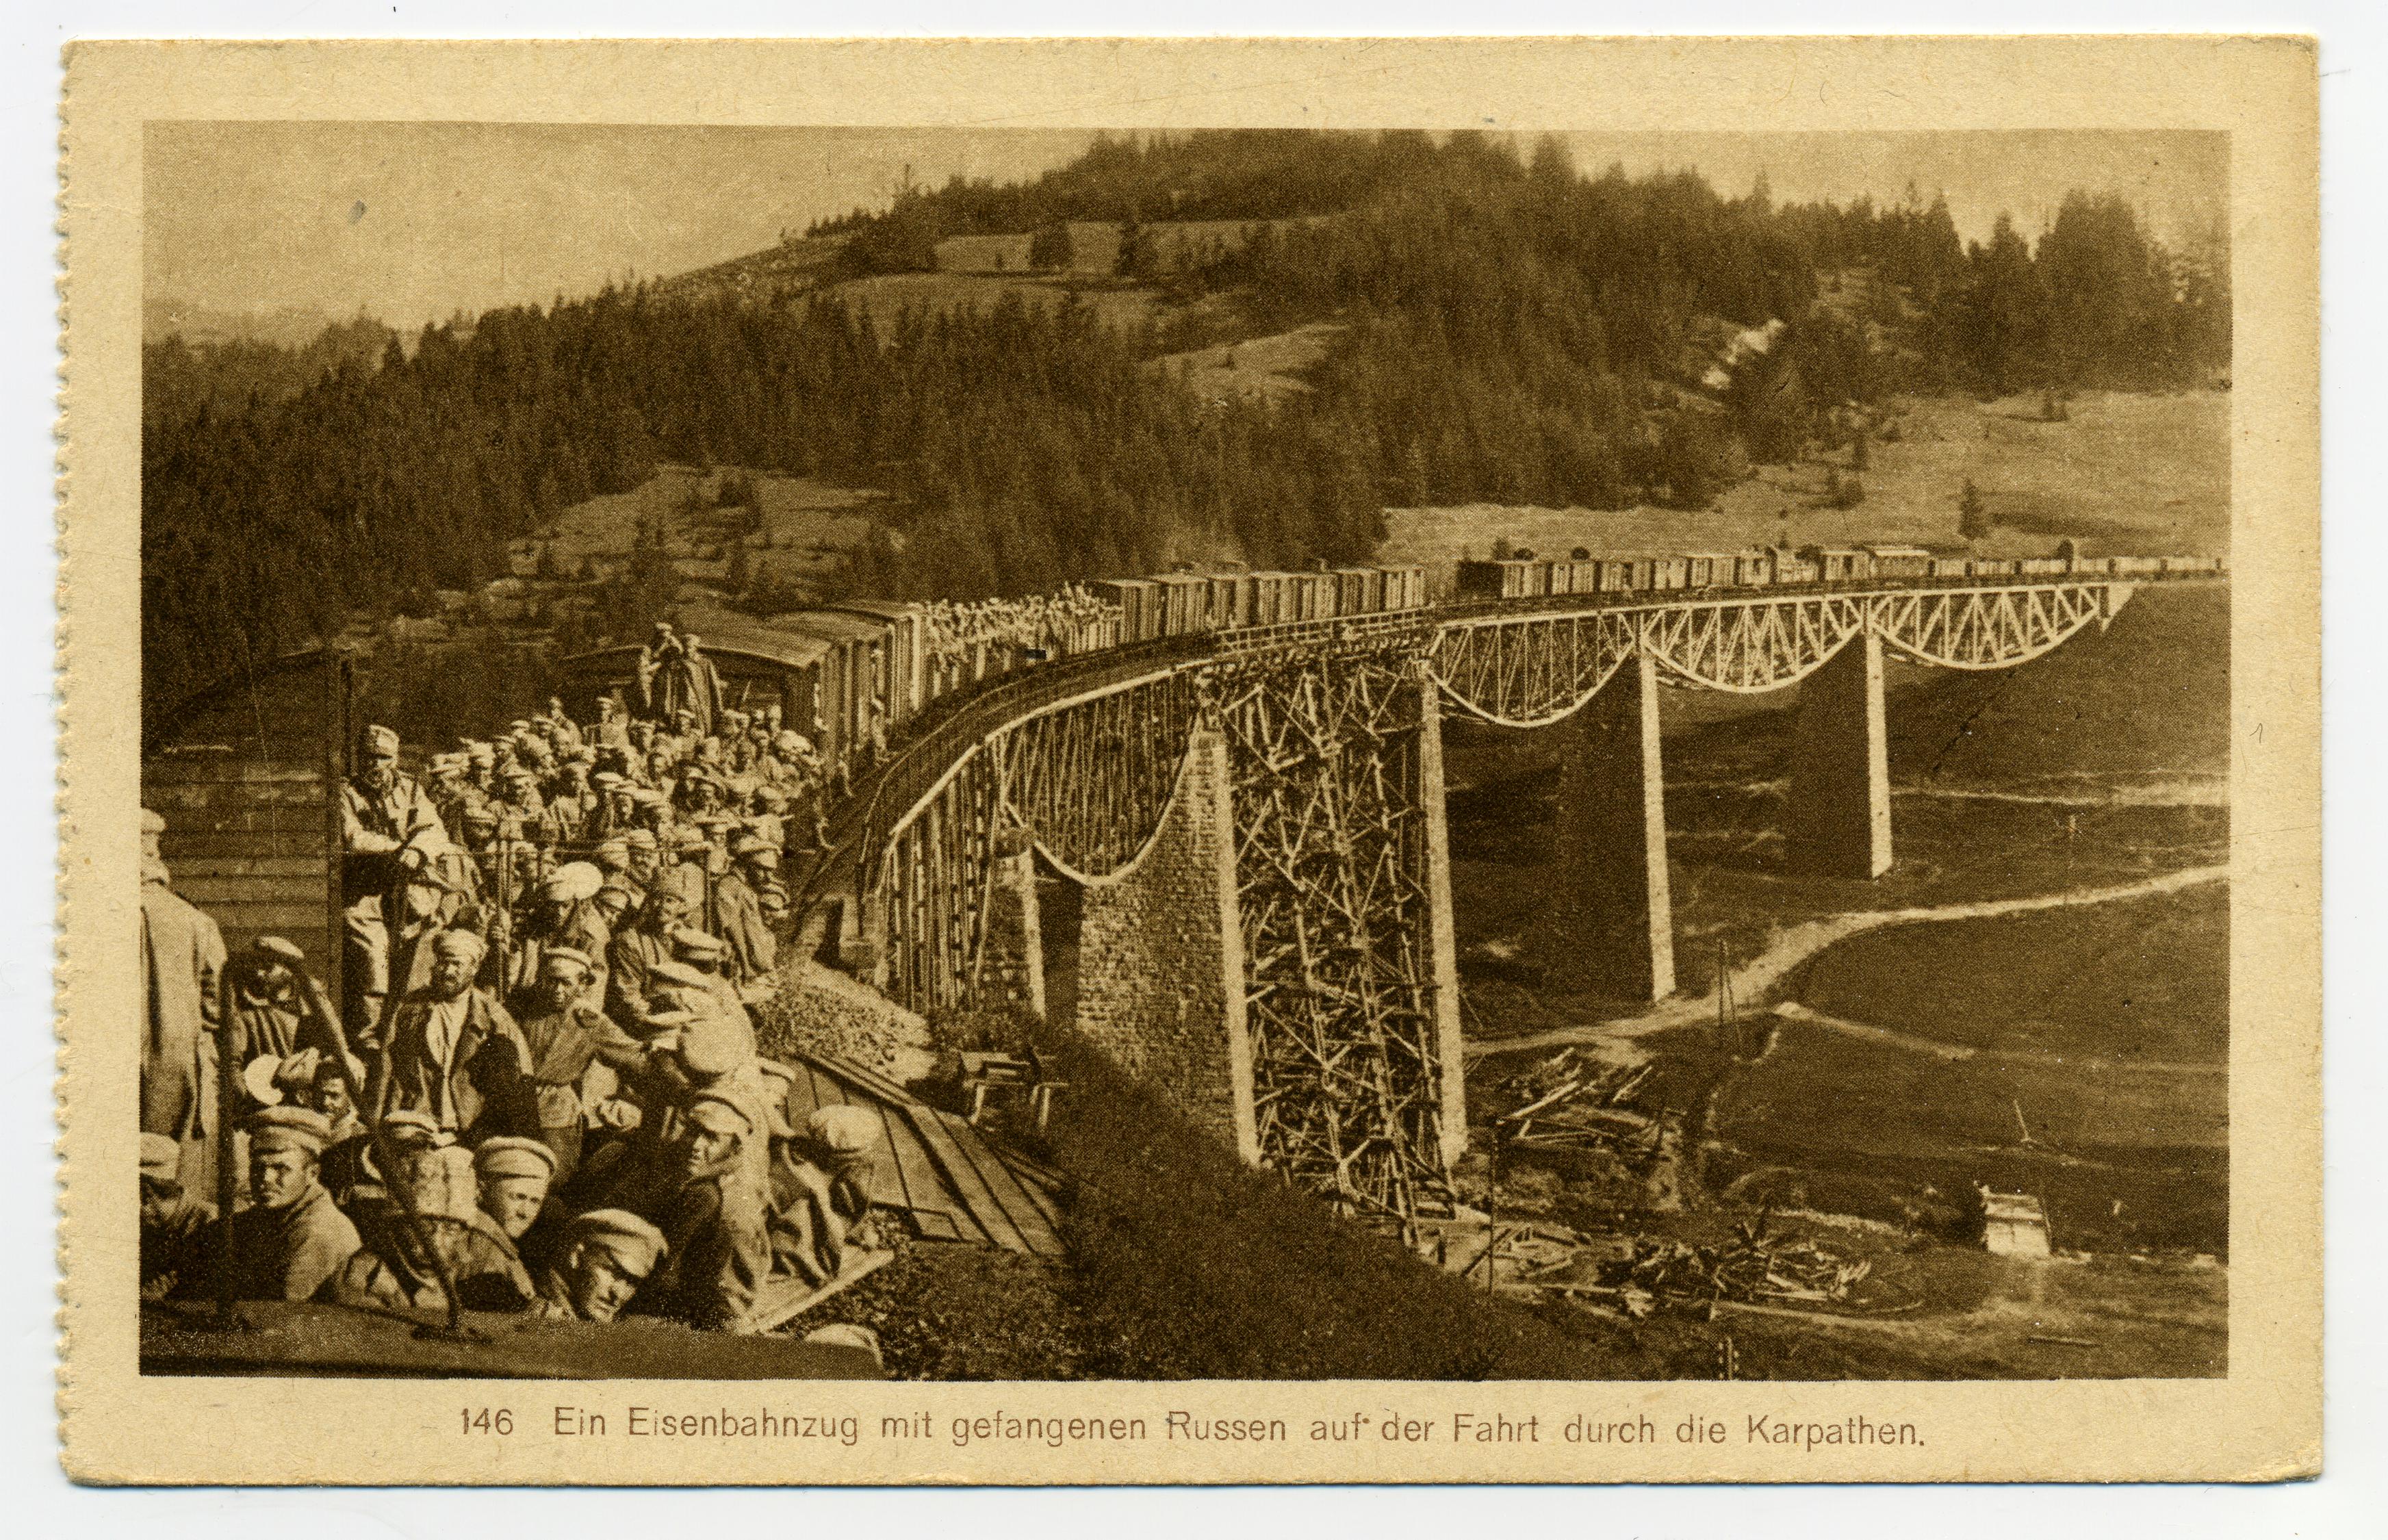 Exponat: Postkarte: Transport russischer Kriegsgefangener in den Karpaten, 1914/1918